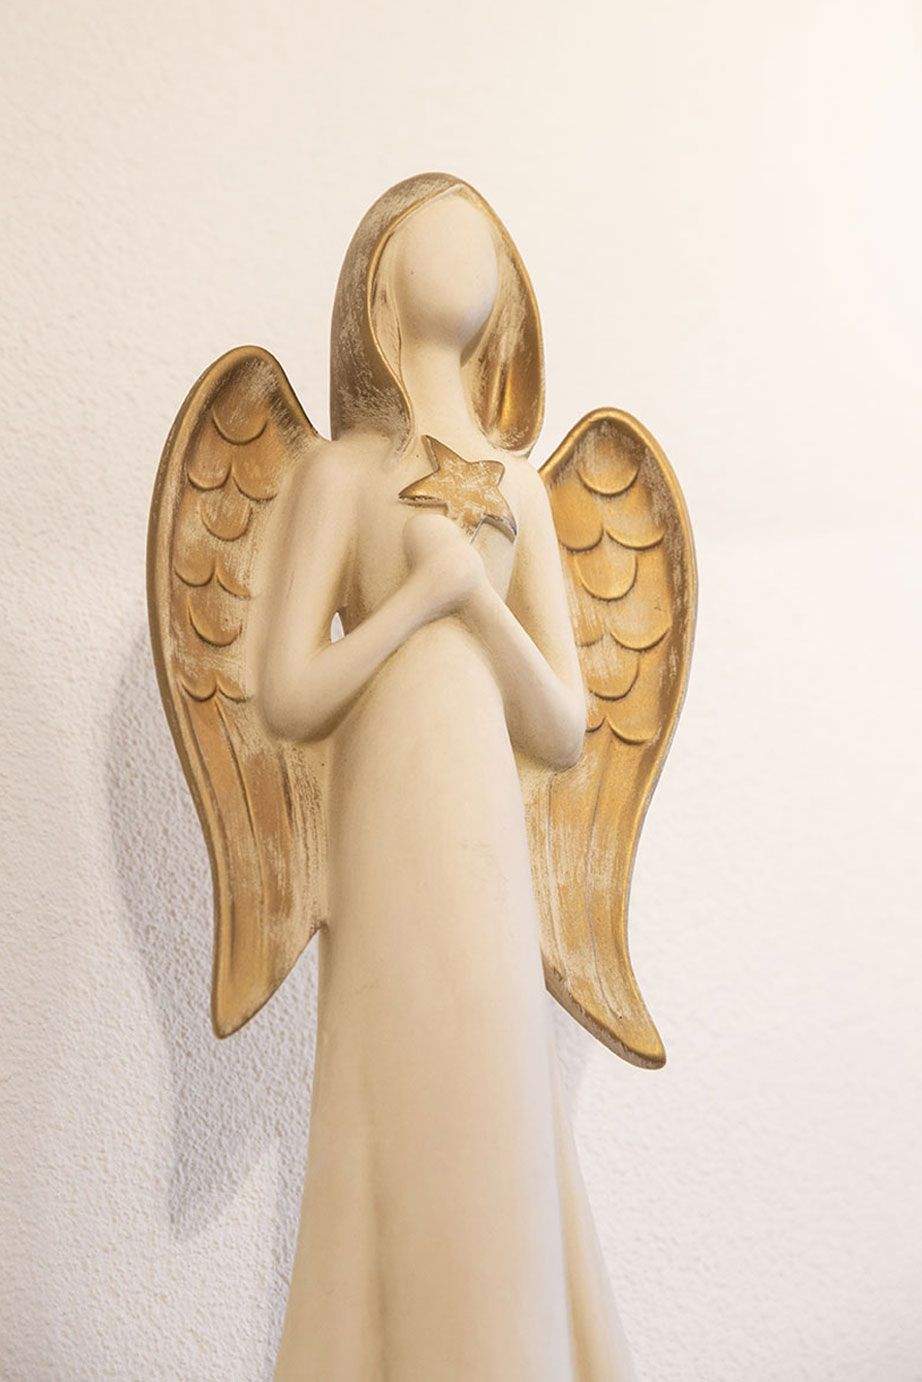 Engel im Behandlungsraum